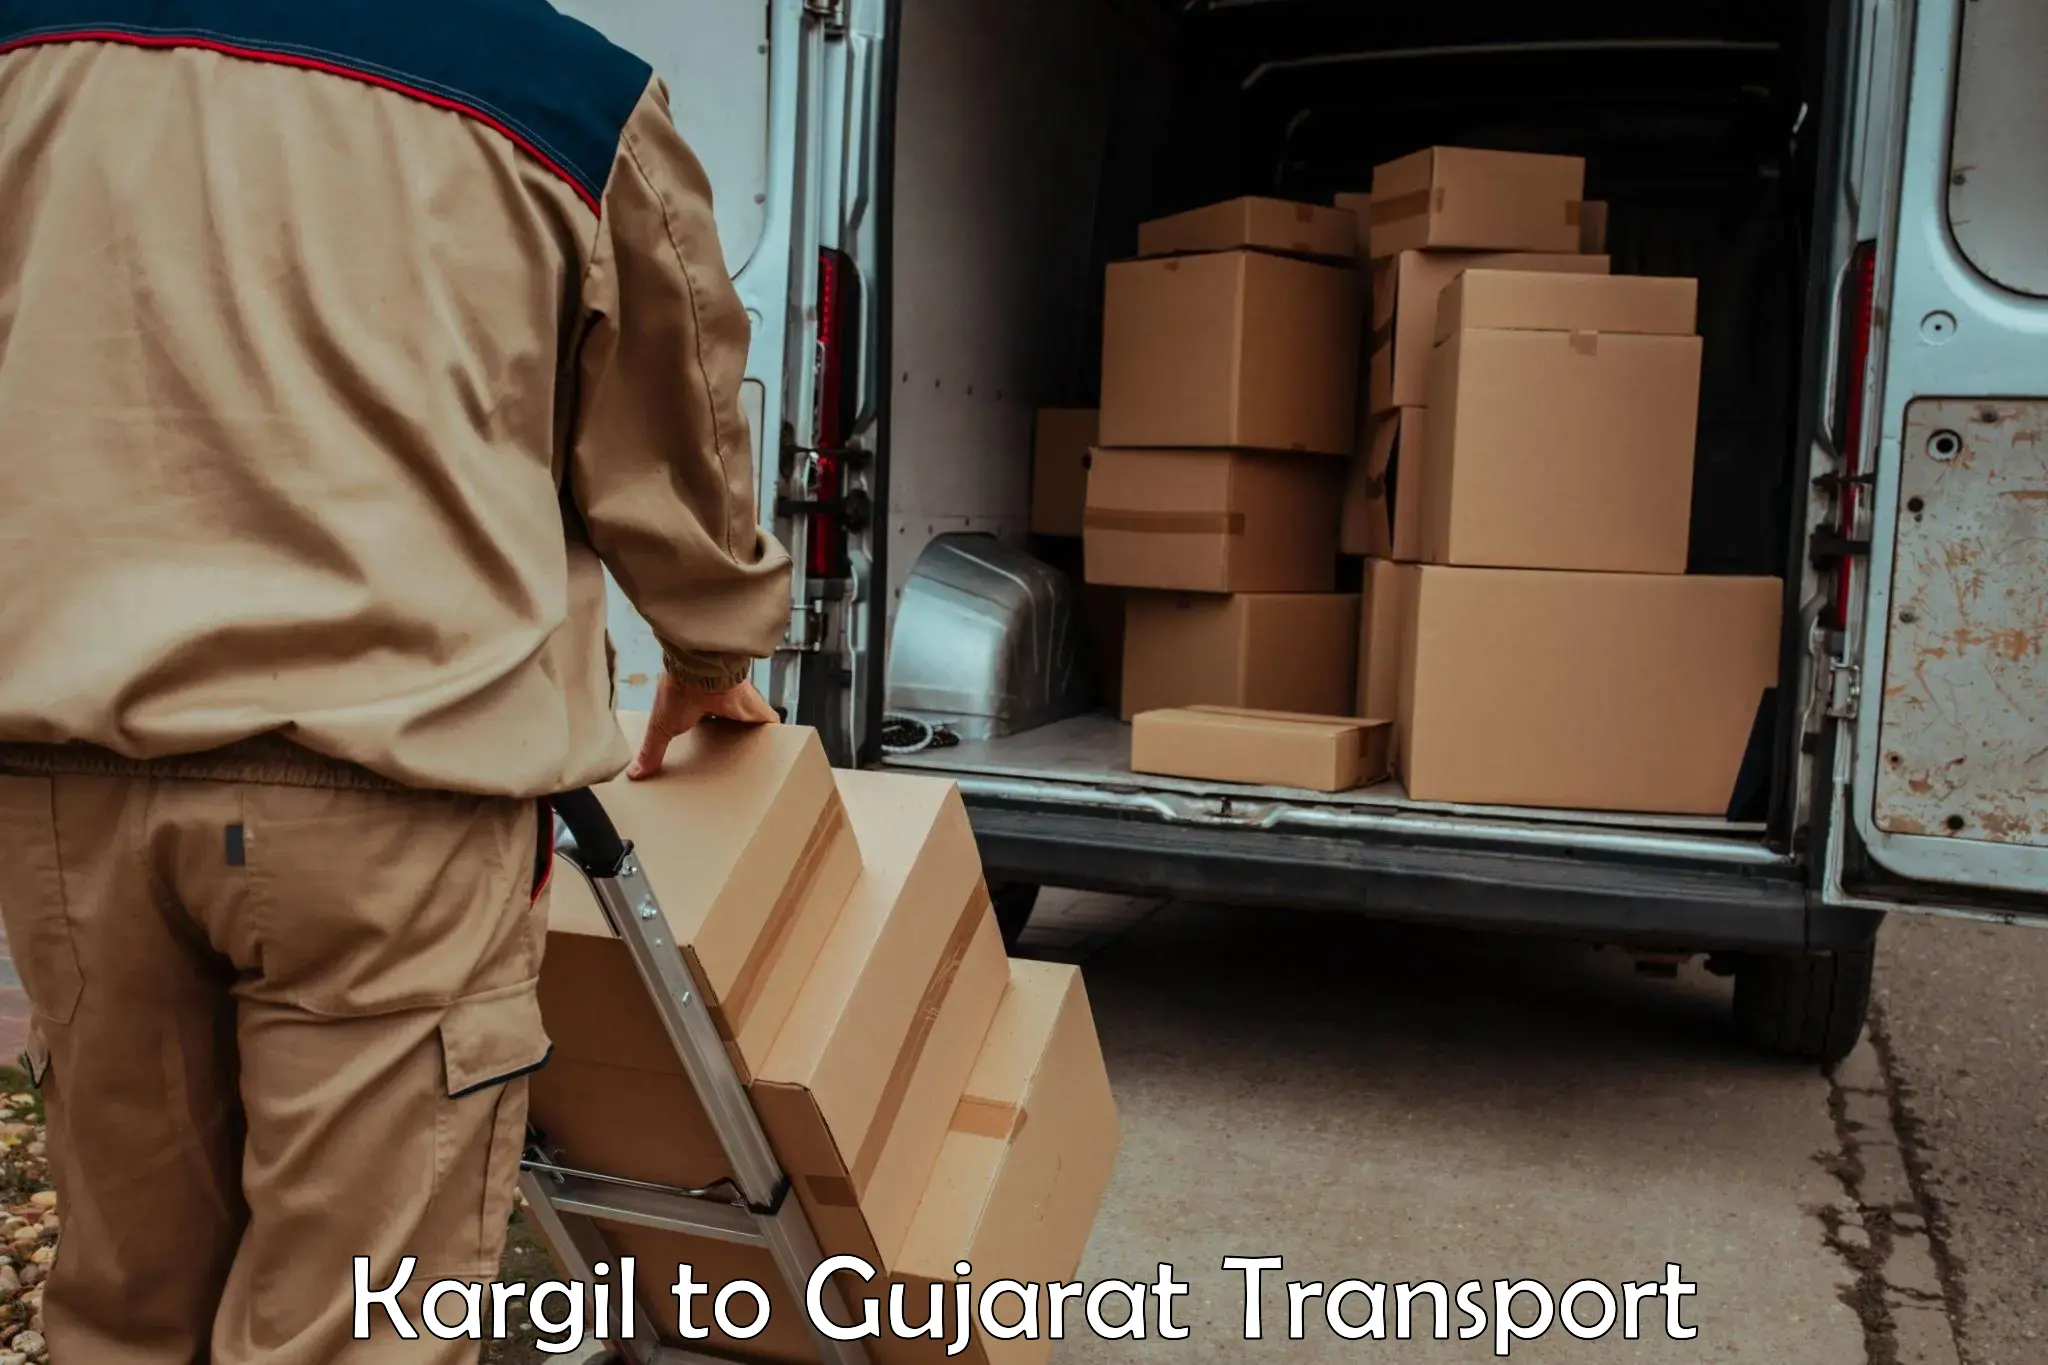 Online transport service Kargil to Kheda